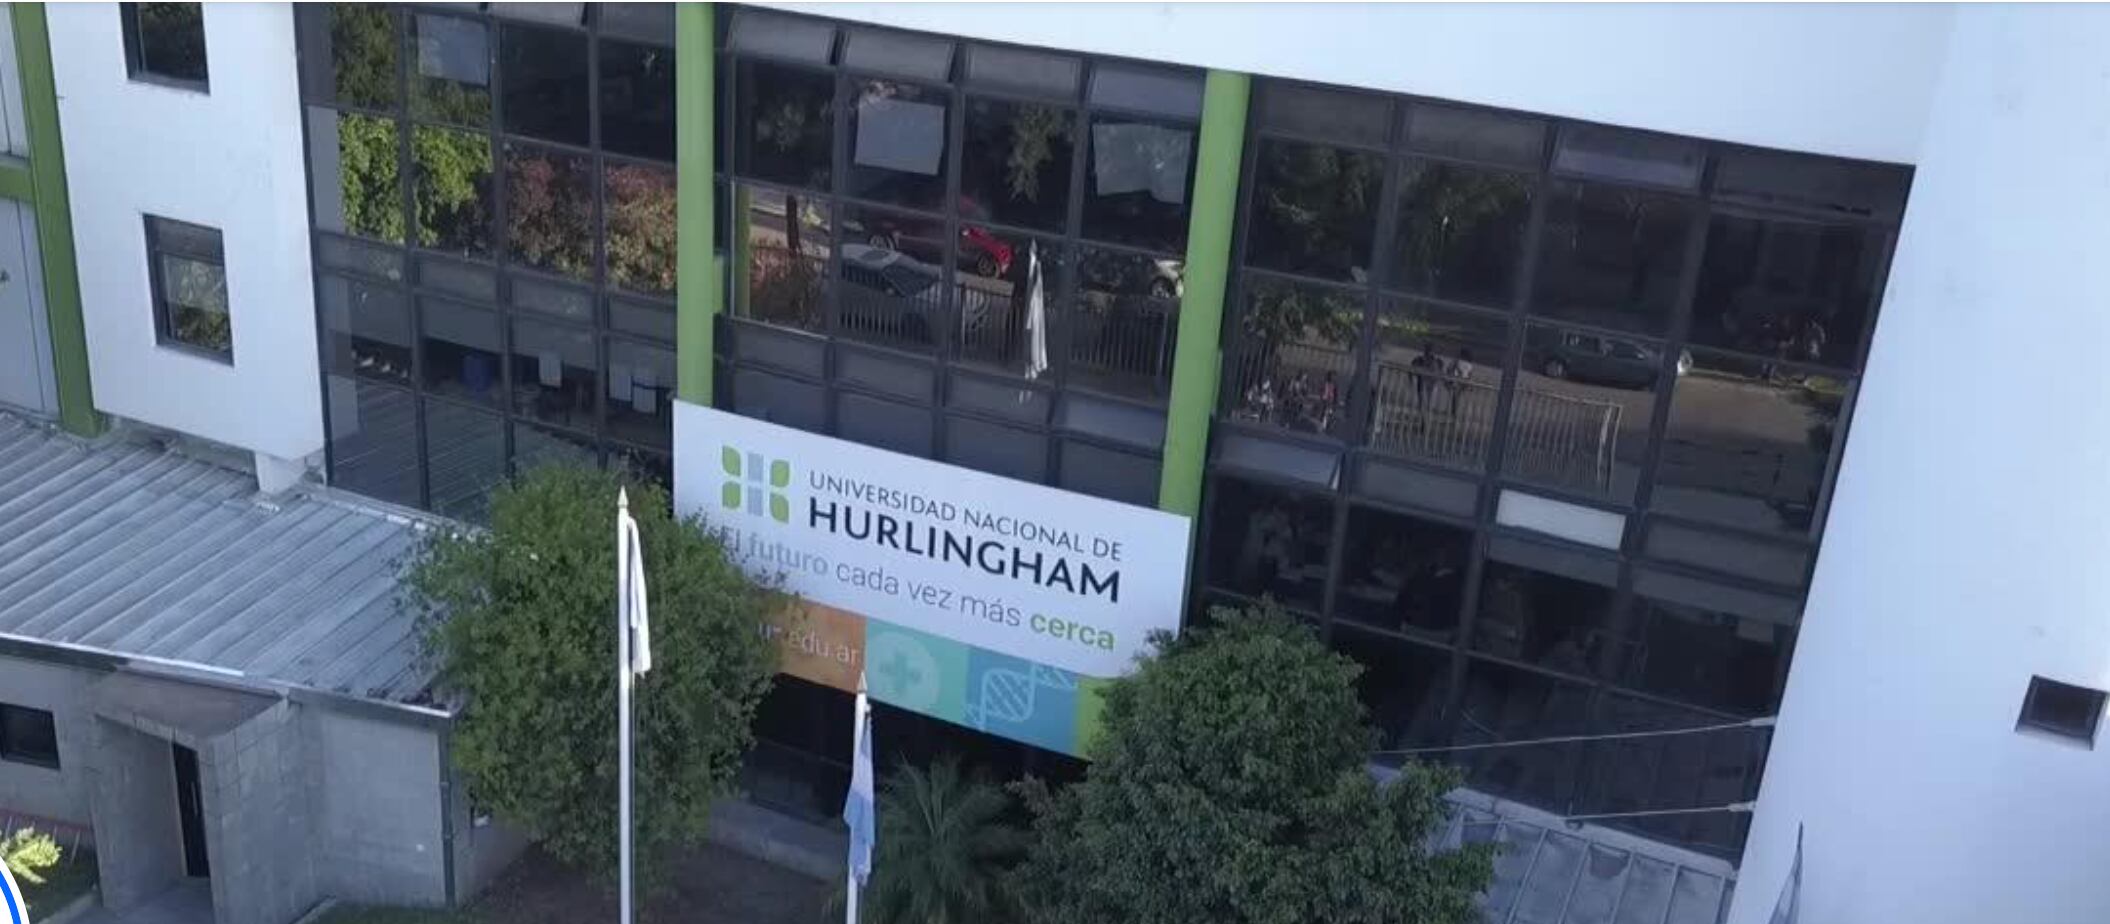 Universidad Nacional de Hurlingham